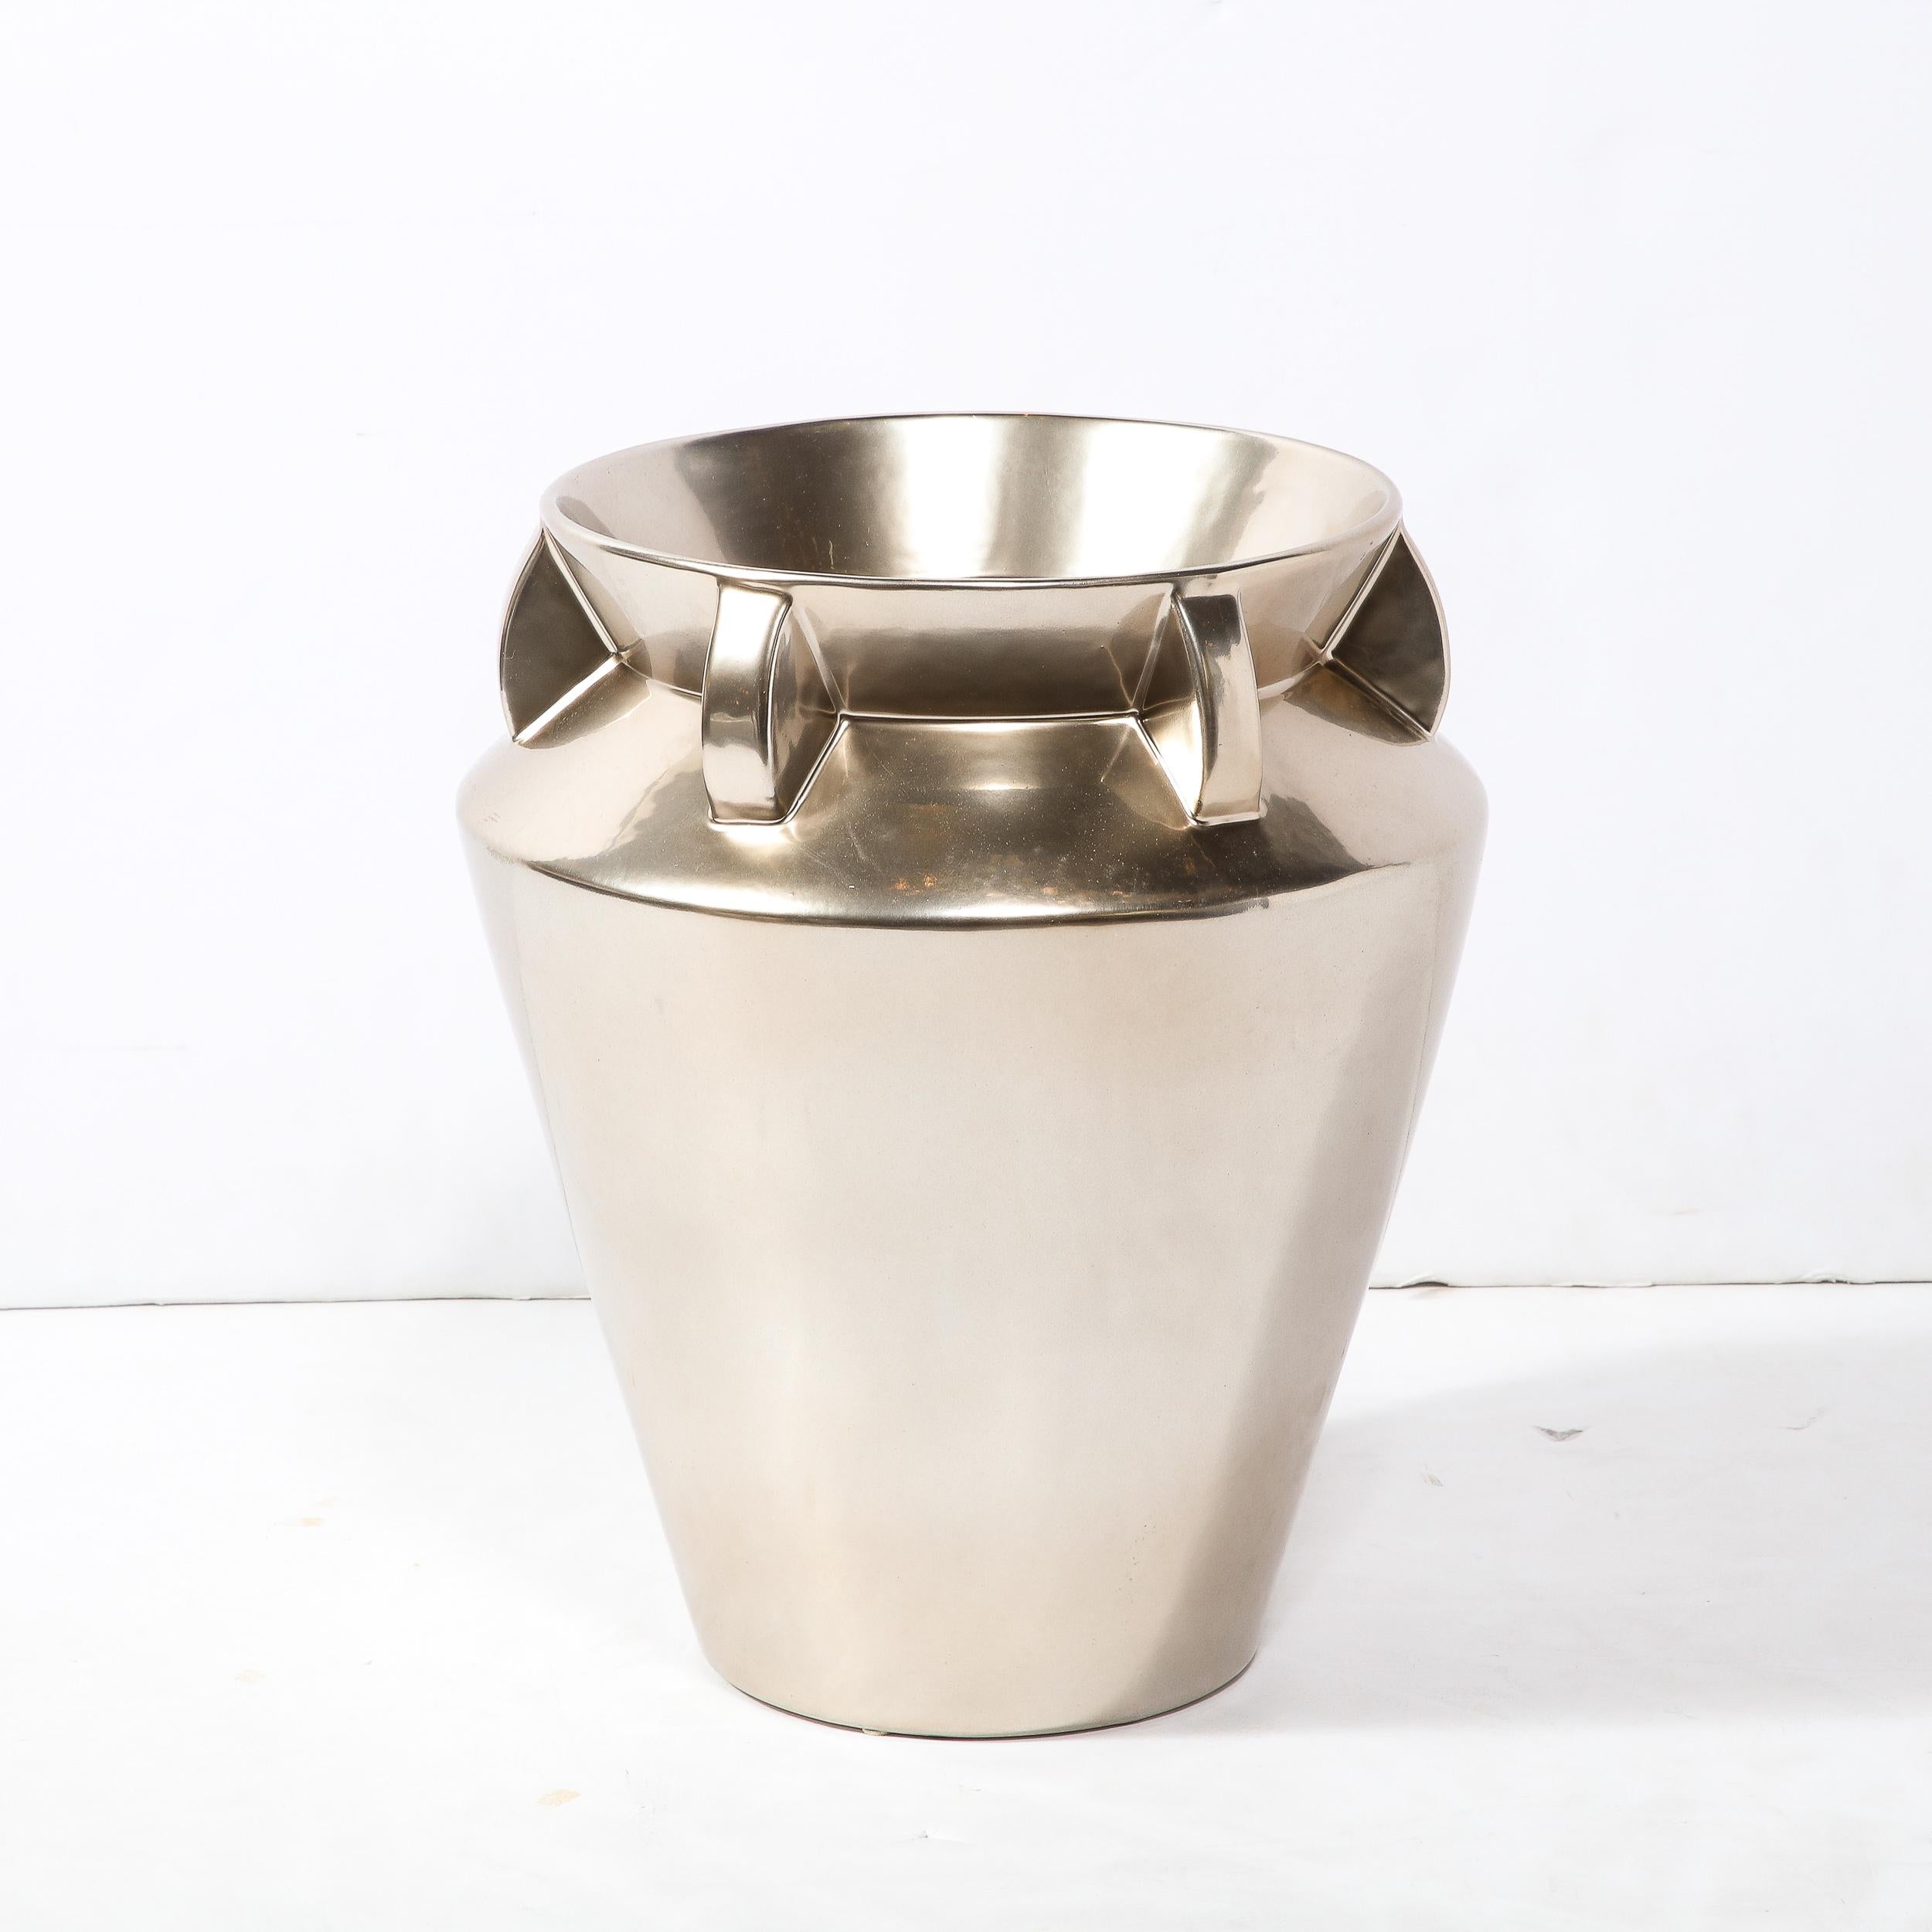 Diese schöne modernistische Vase in Urnenform wurde in der zweiten Hälfte des 20. Jahrhunderts in den Vereinigten Staaten hergestellt. Er hat einen konischen Körper, der sich zu einem abgewinkelten Kragen ausweitet, wo er in den sanduhrförmigen Hals